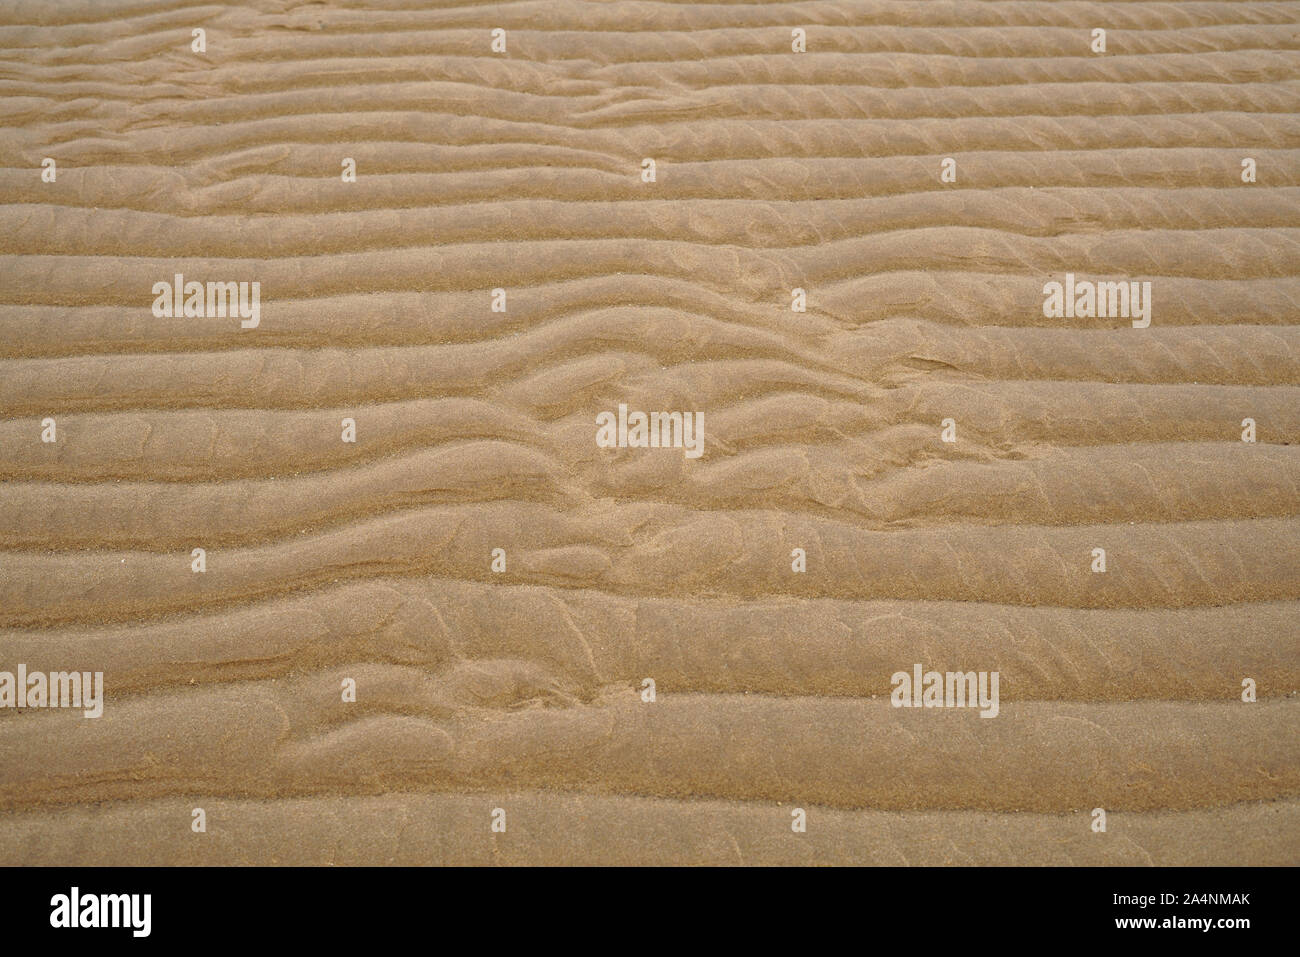 Les bas fonds vaseux de la mer des Wadden, à marée basse. Des modèles naturels sont formés dans le sable. UNESCO World Heritage, Mer du Nord, l'Europe. Banque D'Images